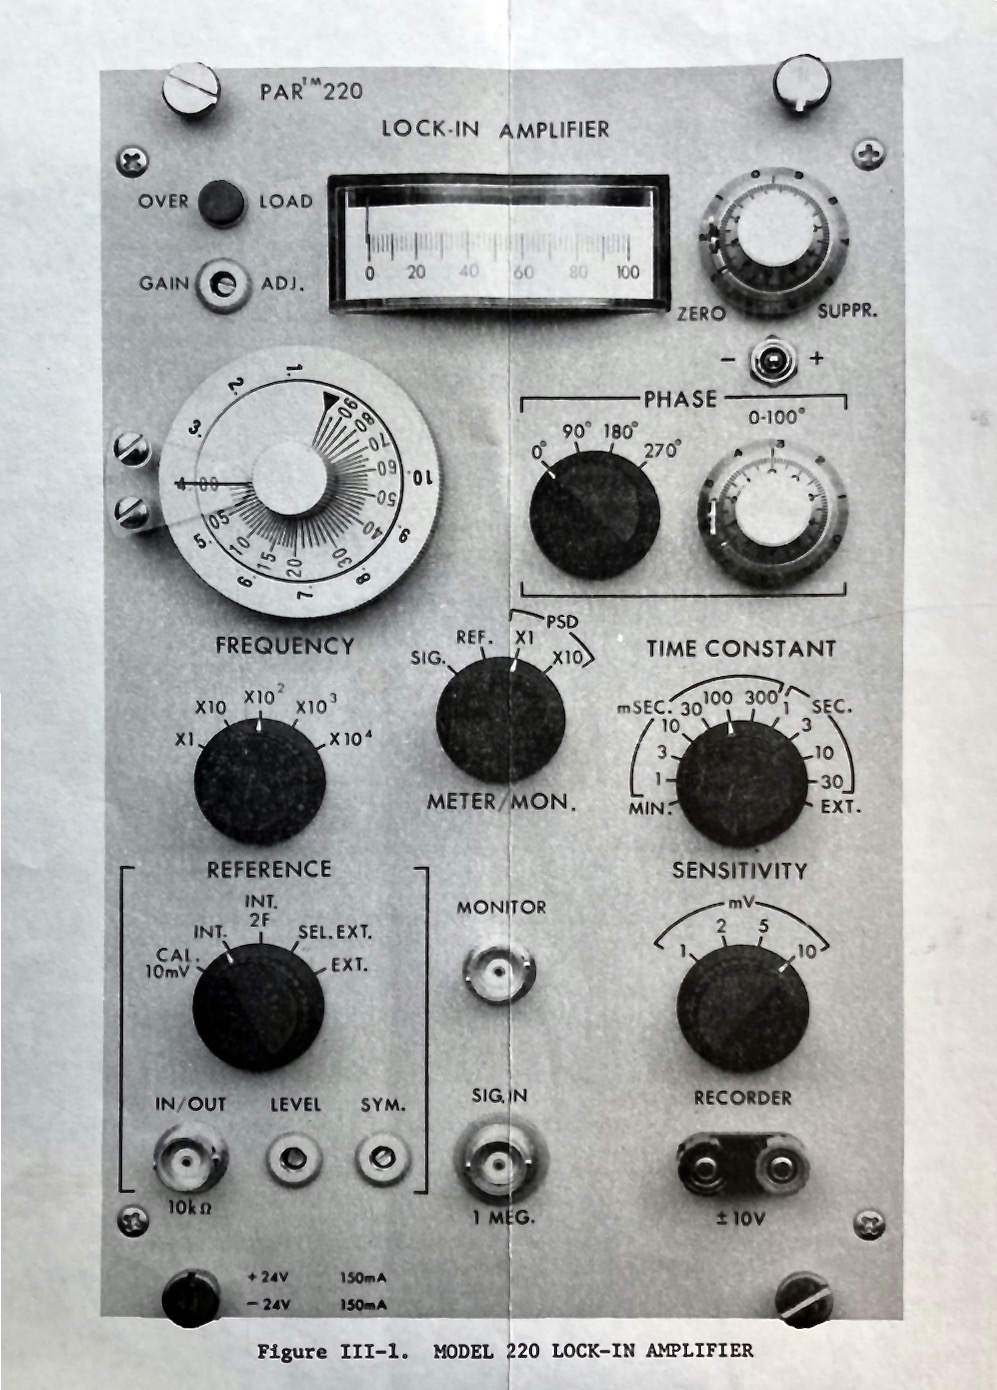 Amplificateur à détection synchrone
(“Lock-In Amplifier”)